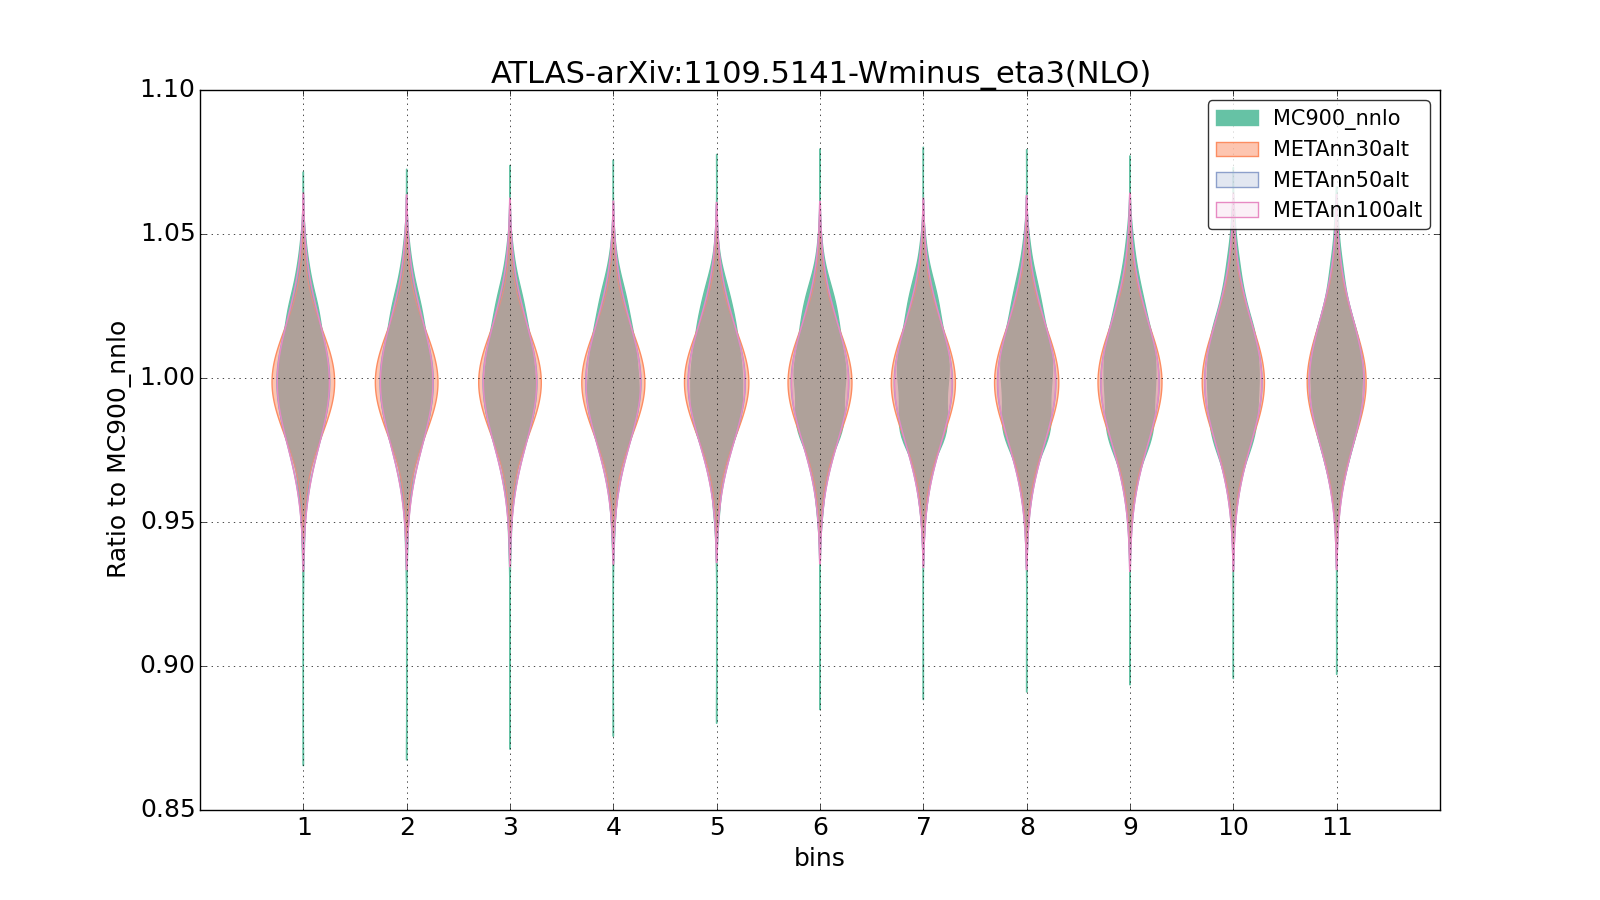 figure plots/metaphenonew/violinplot_ATLAS-arXiv:11095141-Wminus_eta3(NLO).png